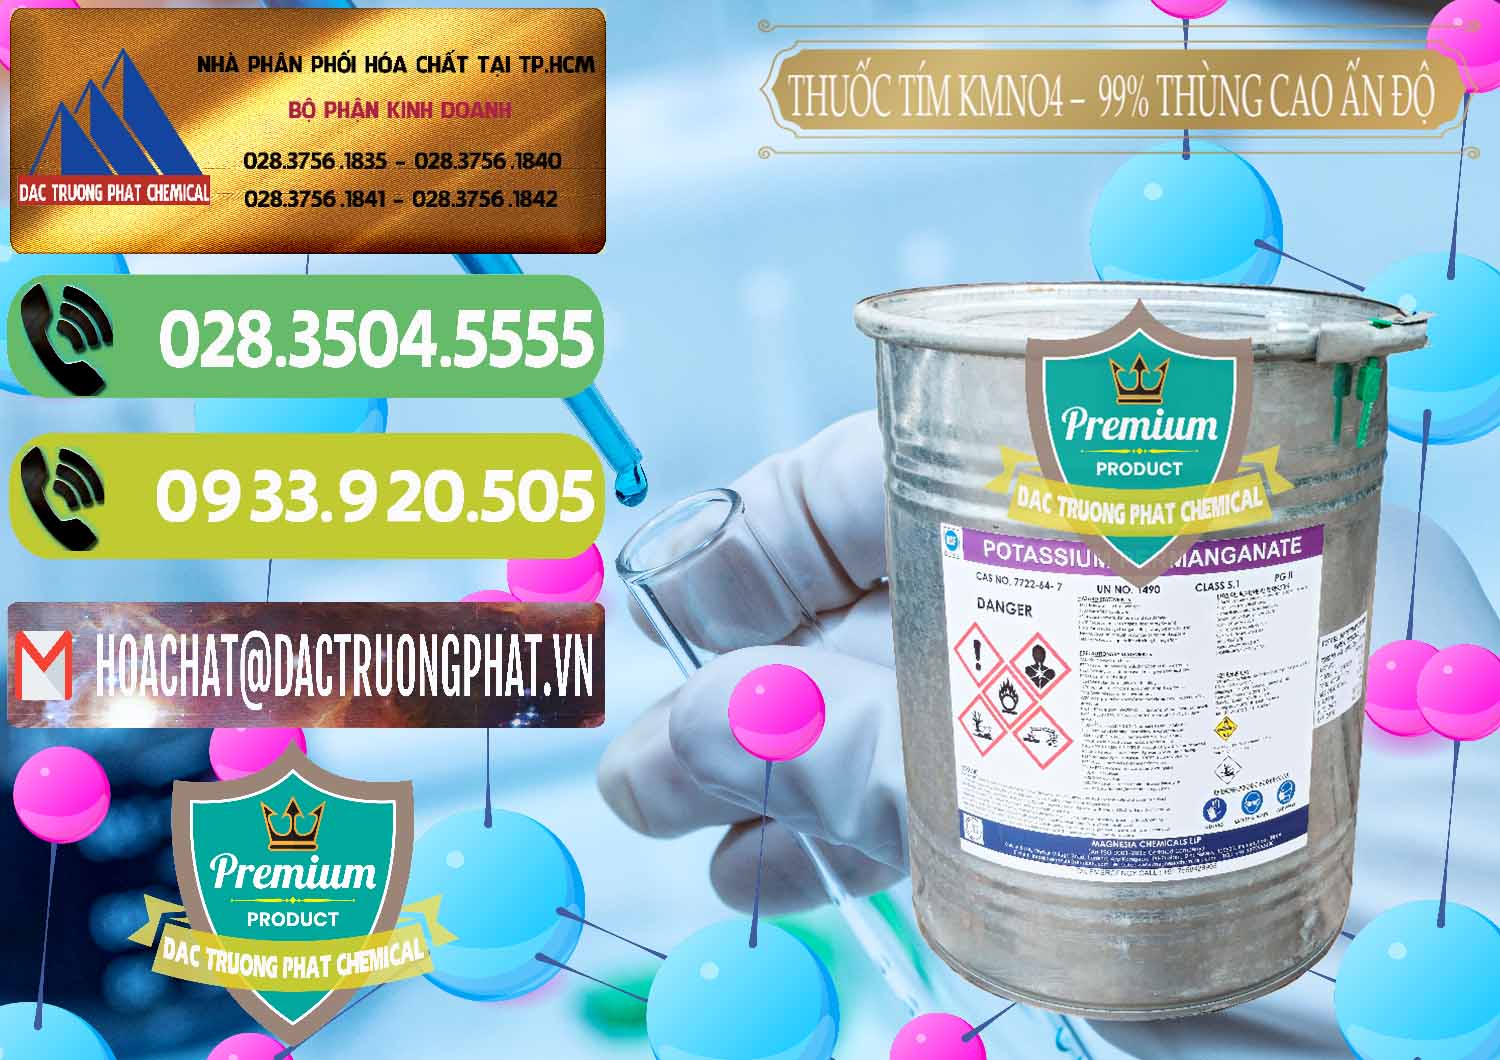 Công ty chuyên cung cấp & bán Thuốc Tím - KMNO4 Thùng Cao 99% Magnesia Chemicals Ấn Độ India - 0164 - Cty chuyên cung cấp và bán hóa chất tại TP.HCM - hoachatmientay.vn